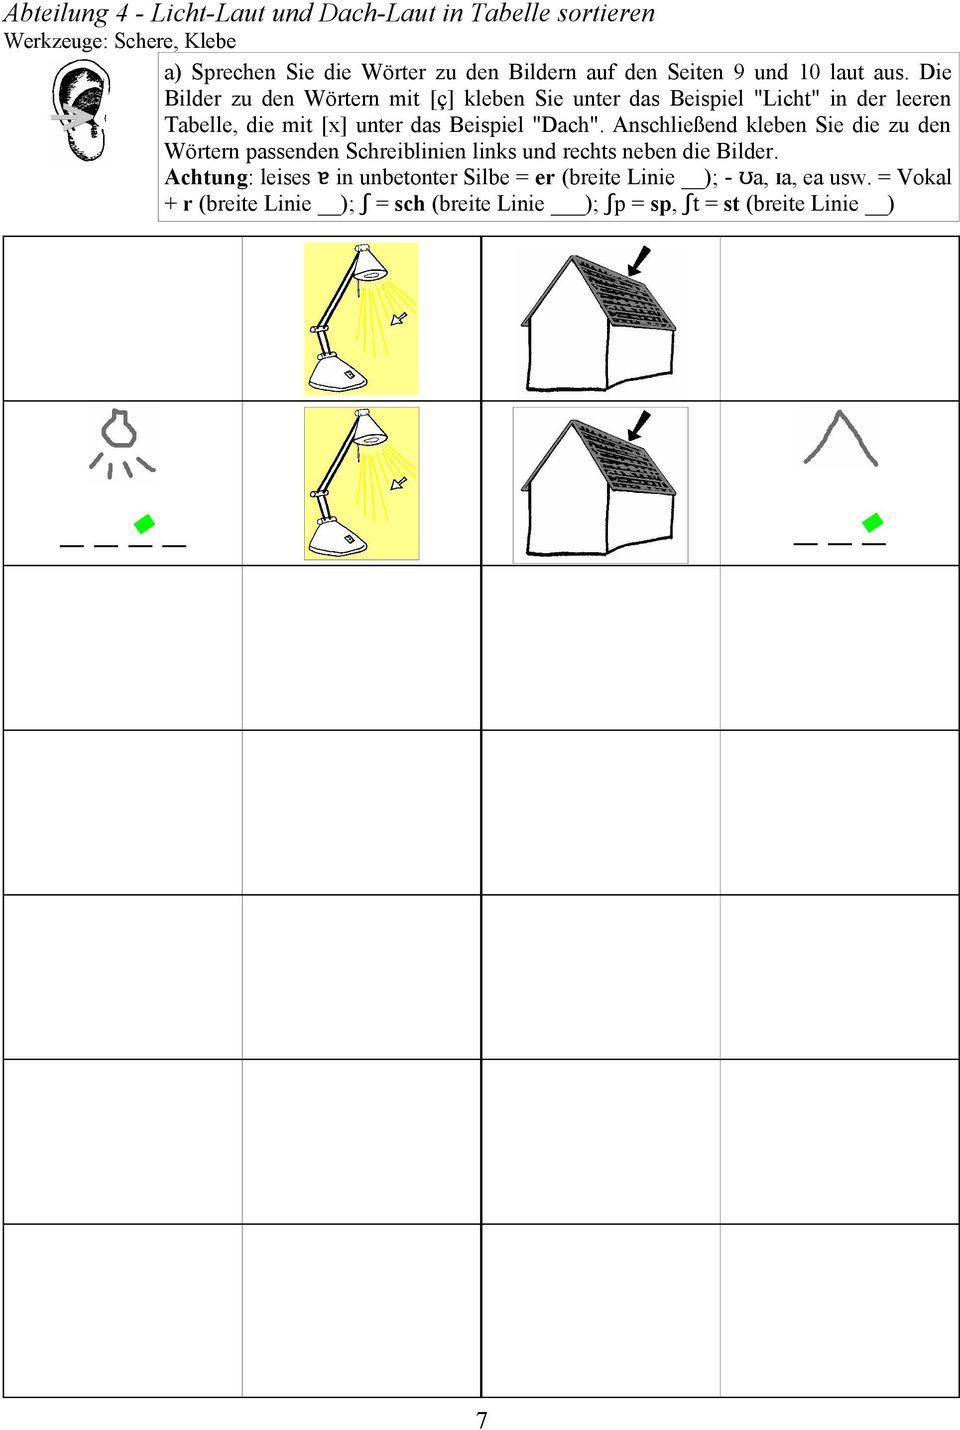 Die Bilder zu den Wörtern mit [ç] kleben Sie unter das Beispiel "Licht" in der leeren Tabelle, die mit [x] unter das Beispiel "Dach".